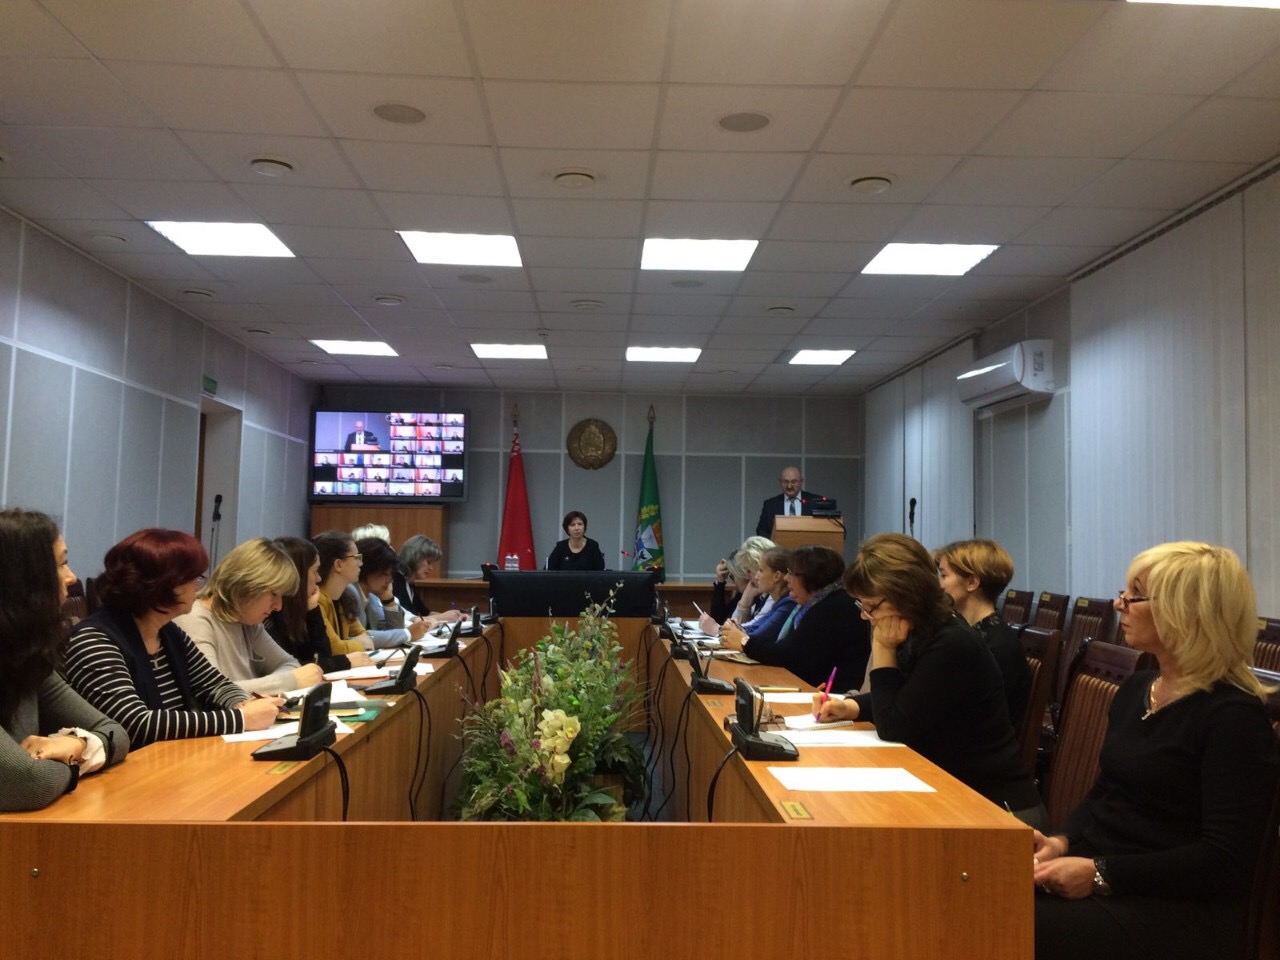 Представитель КГК Гомельской области принял участие в работе семинара-совещания по актуальным вопросам совершенствования работы с обращениями граждан и юридических лиц